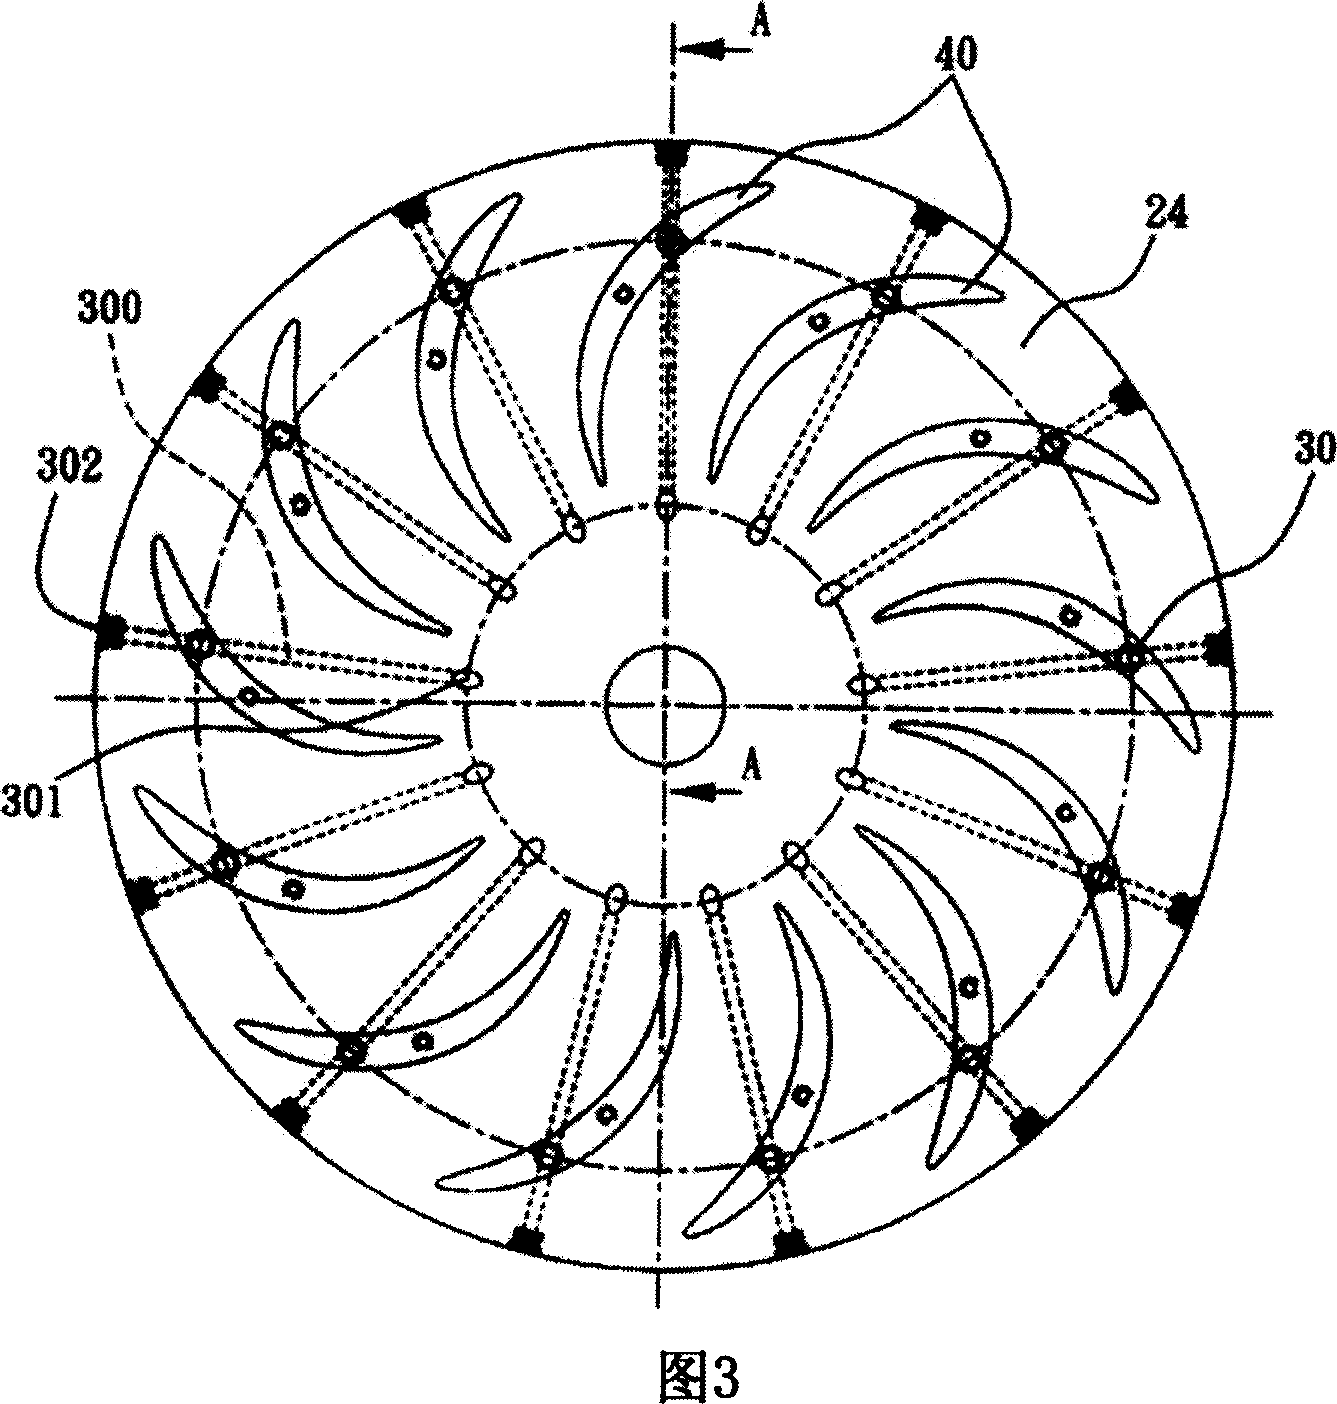 Compressor jet flow path structure